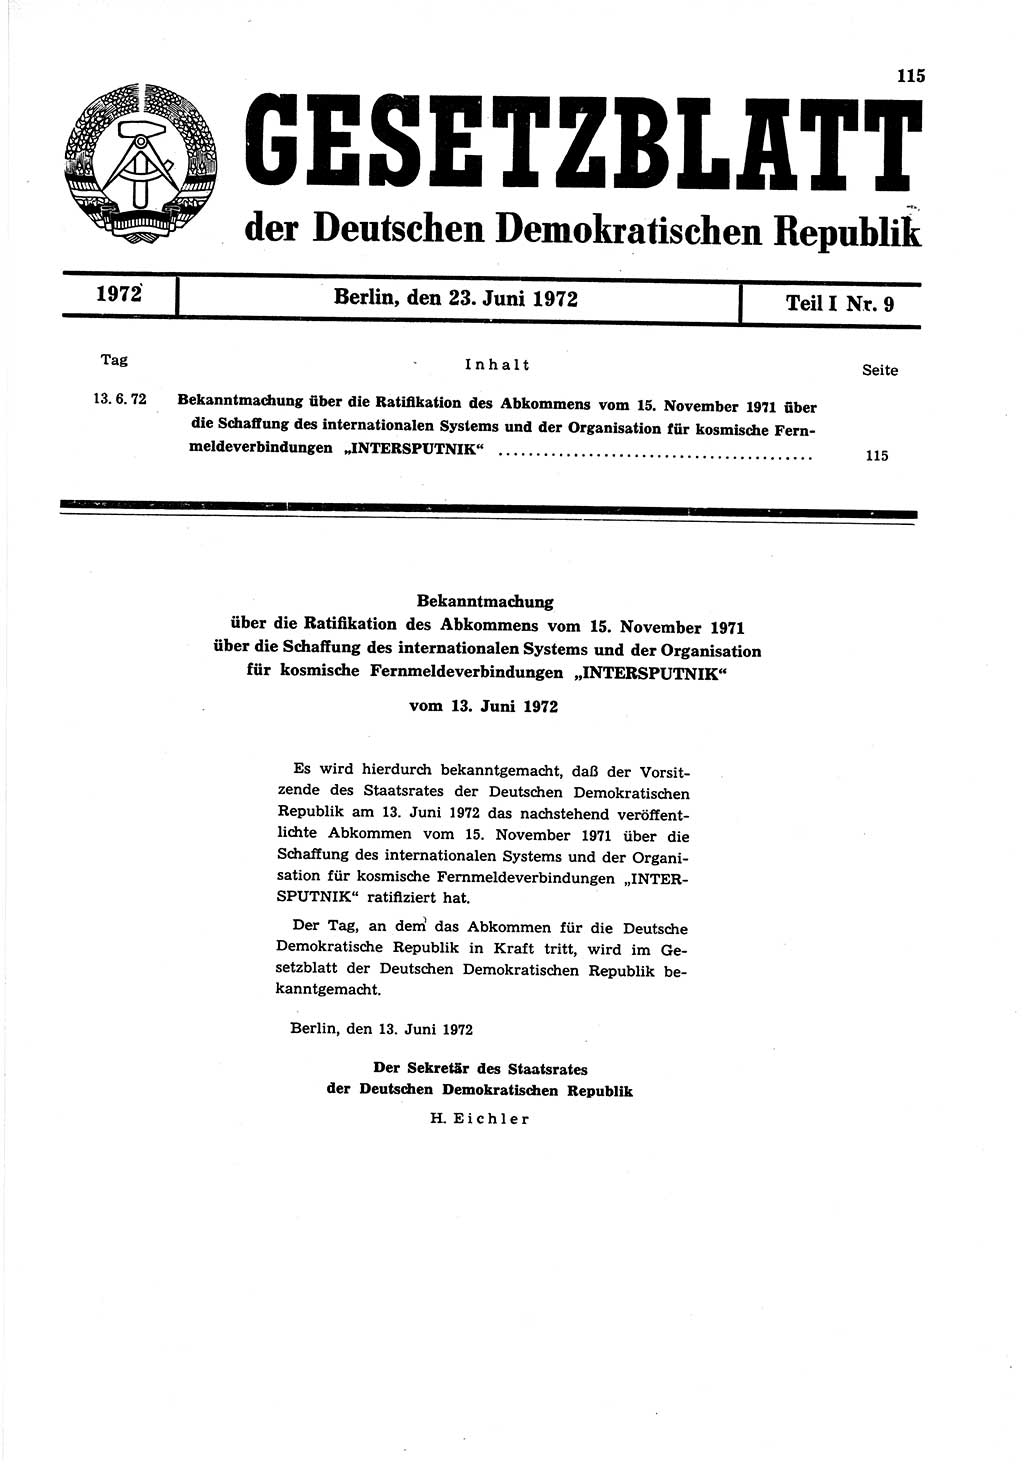 Gesetzblatt (GBl.) der Deutschen Demokratischen Republik (DDR) Teil Ⅰ 1972, Seite 115 (GBl. DDR Ⅰ 1972, S. 115)